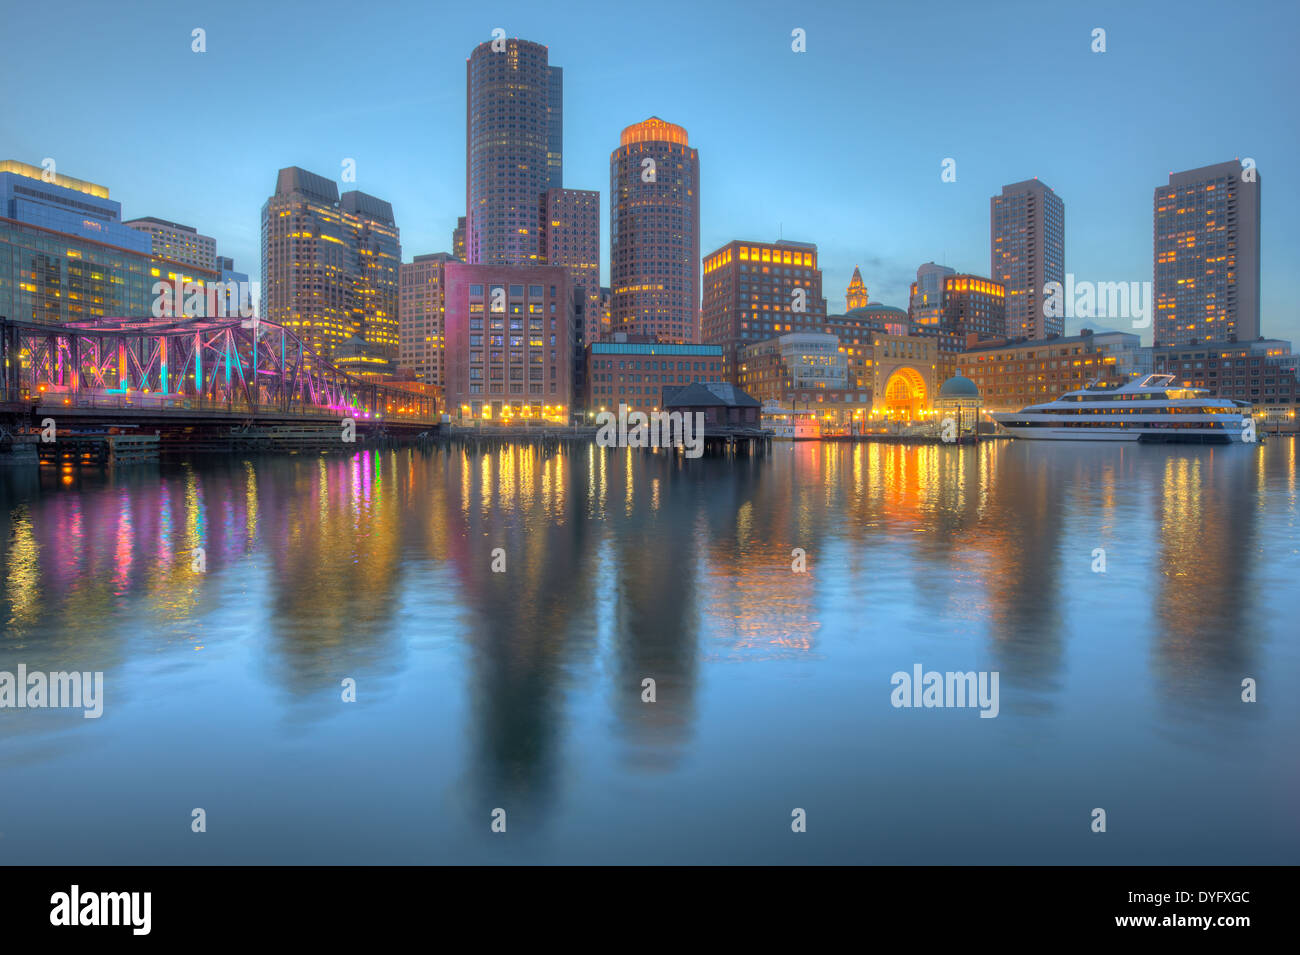 Die Skyline ist beleuchtet und reflektiert das Wasser des Hafens, wie Dämmerung senkt sich in Boston, Massachusetts. Stockfoto